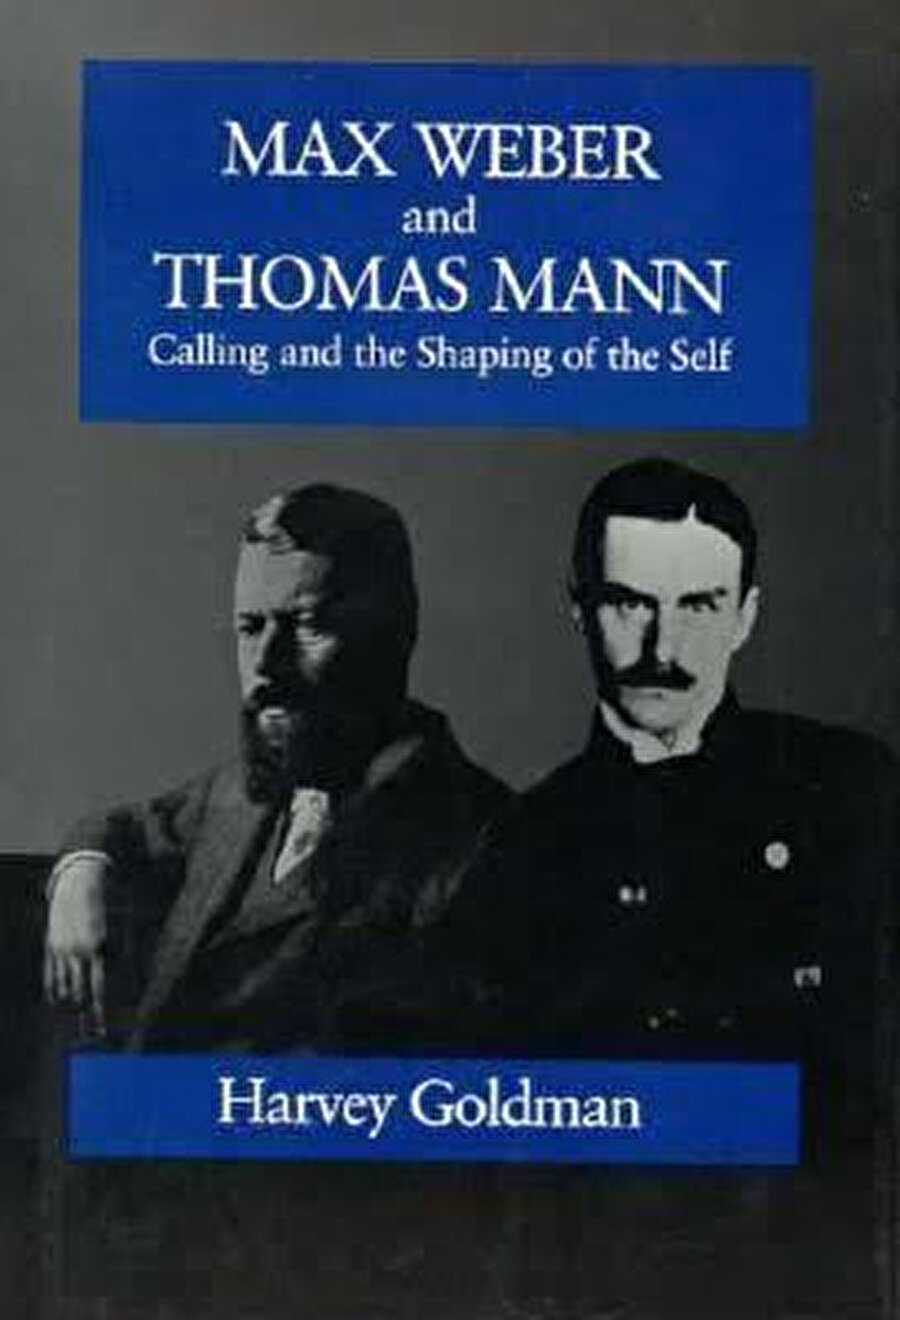 Thomas Mann ile Max Weber, ilk bakışta iki zıt kutup gibi görünür. O kadar ki, bu iki ustayı mukayeseye müstakil bir kitap ayıran Harvey Goldman, kitabı Almanca yazmış olsaydı başlığını “Büyücü ile Büyübozucu” (Der Zauberer und der Entzauberer) koyacağını belirtiyor.